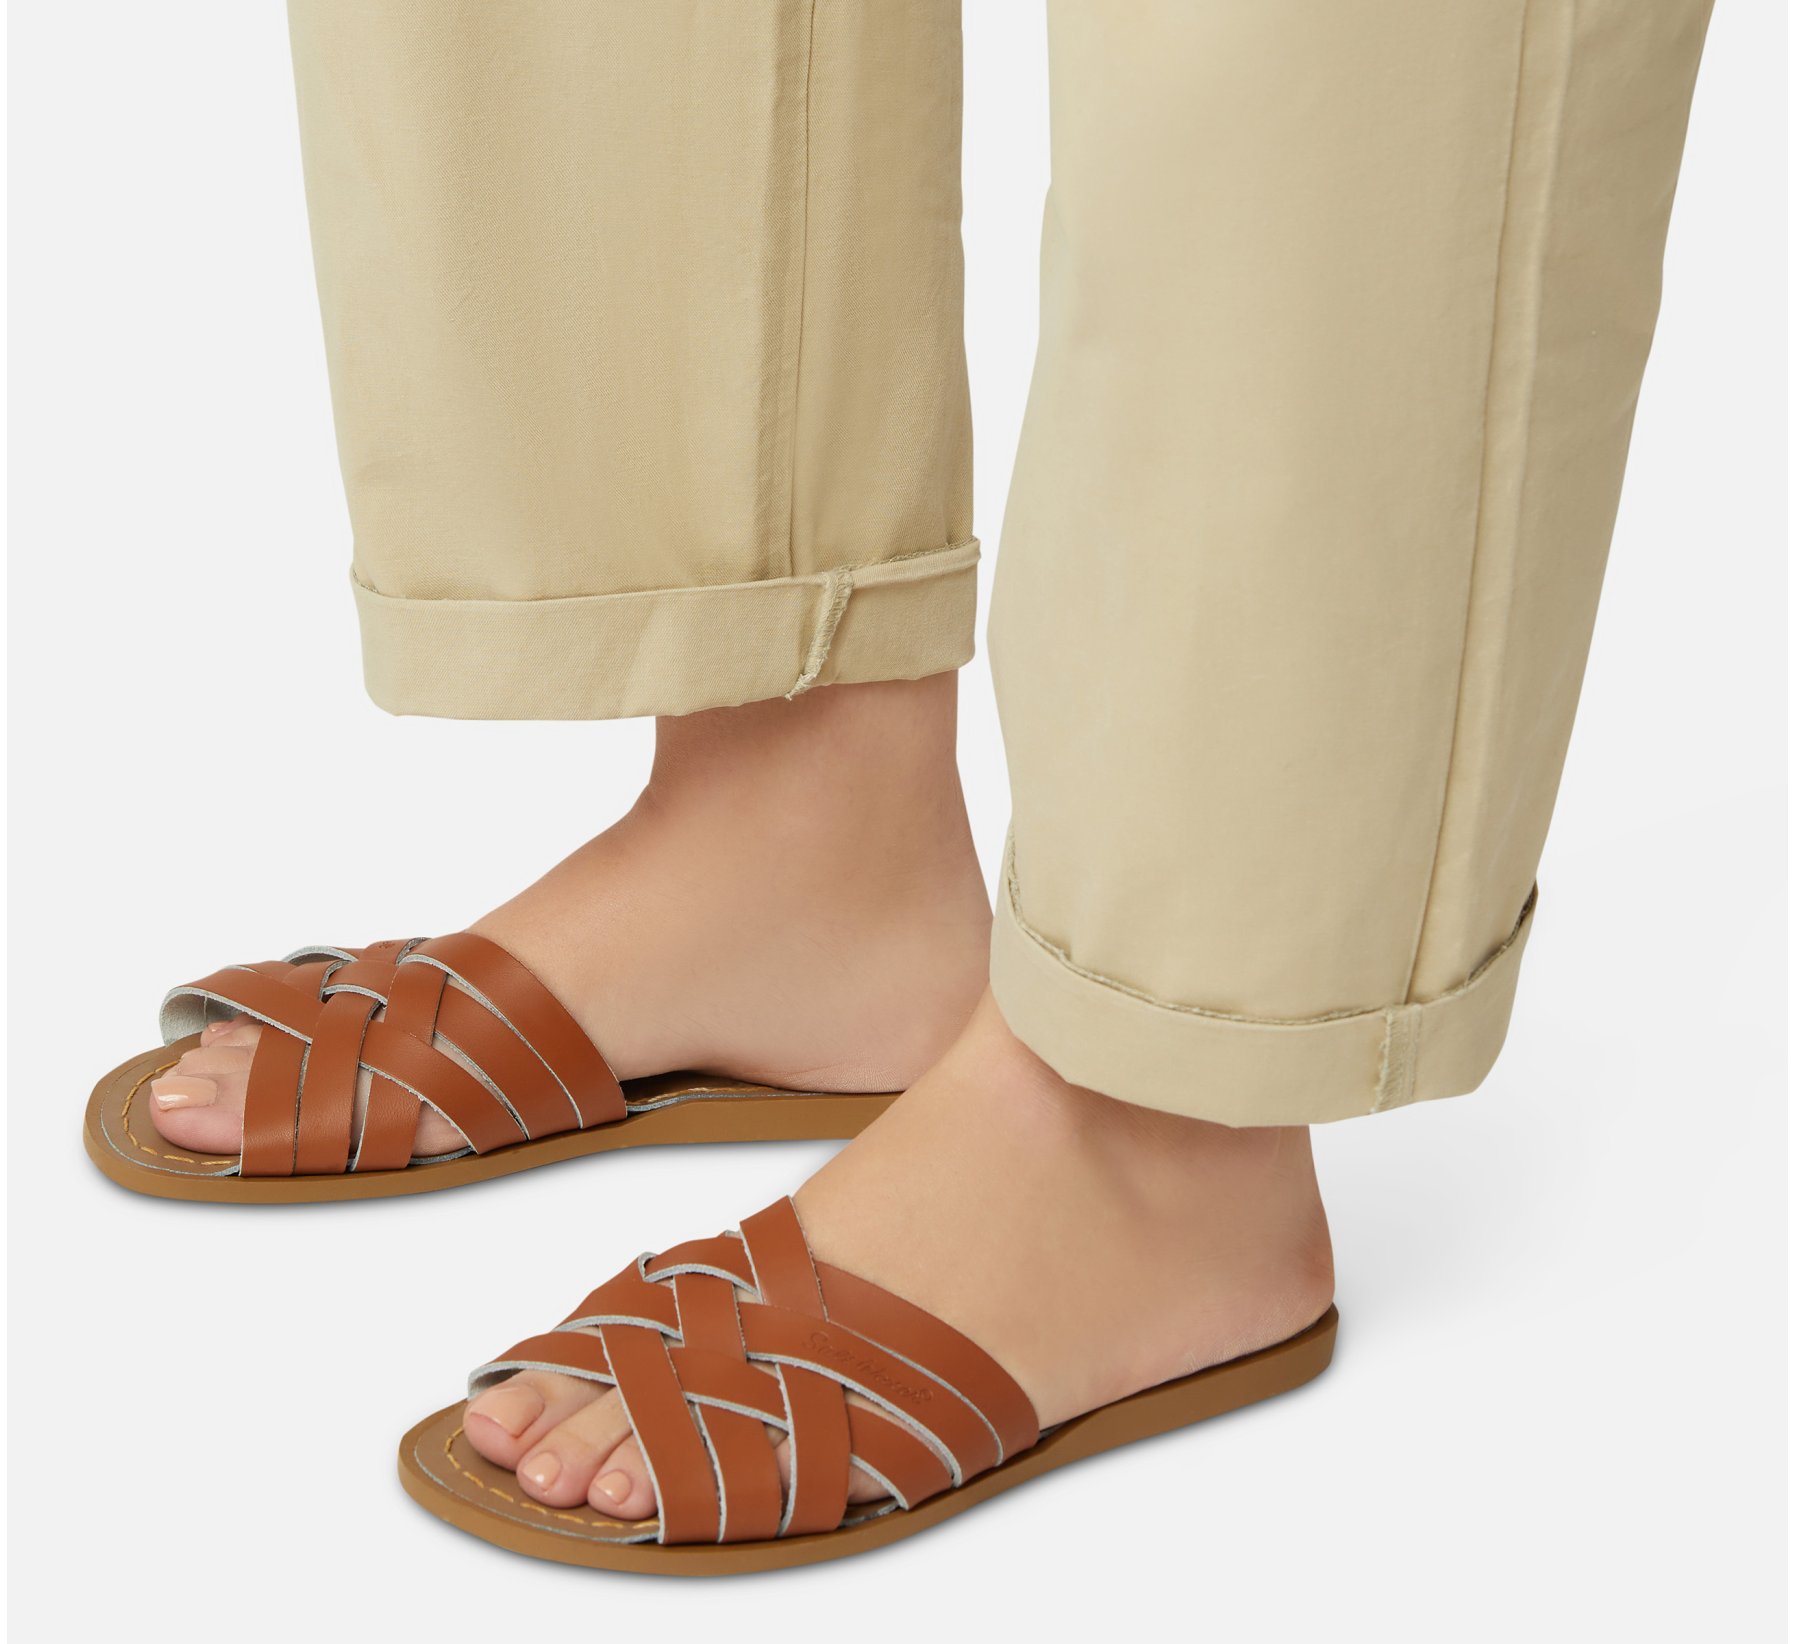 Retro Slide Brun Roux - Salt Water Sandals